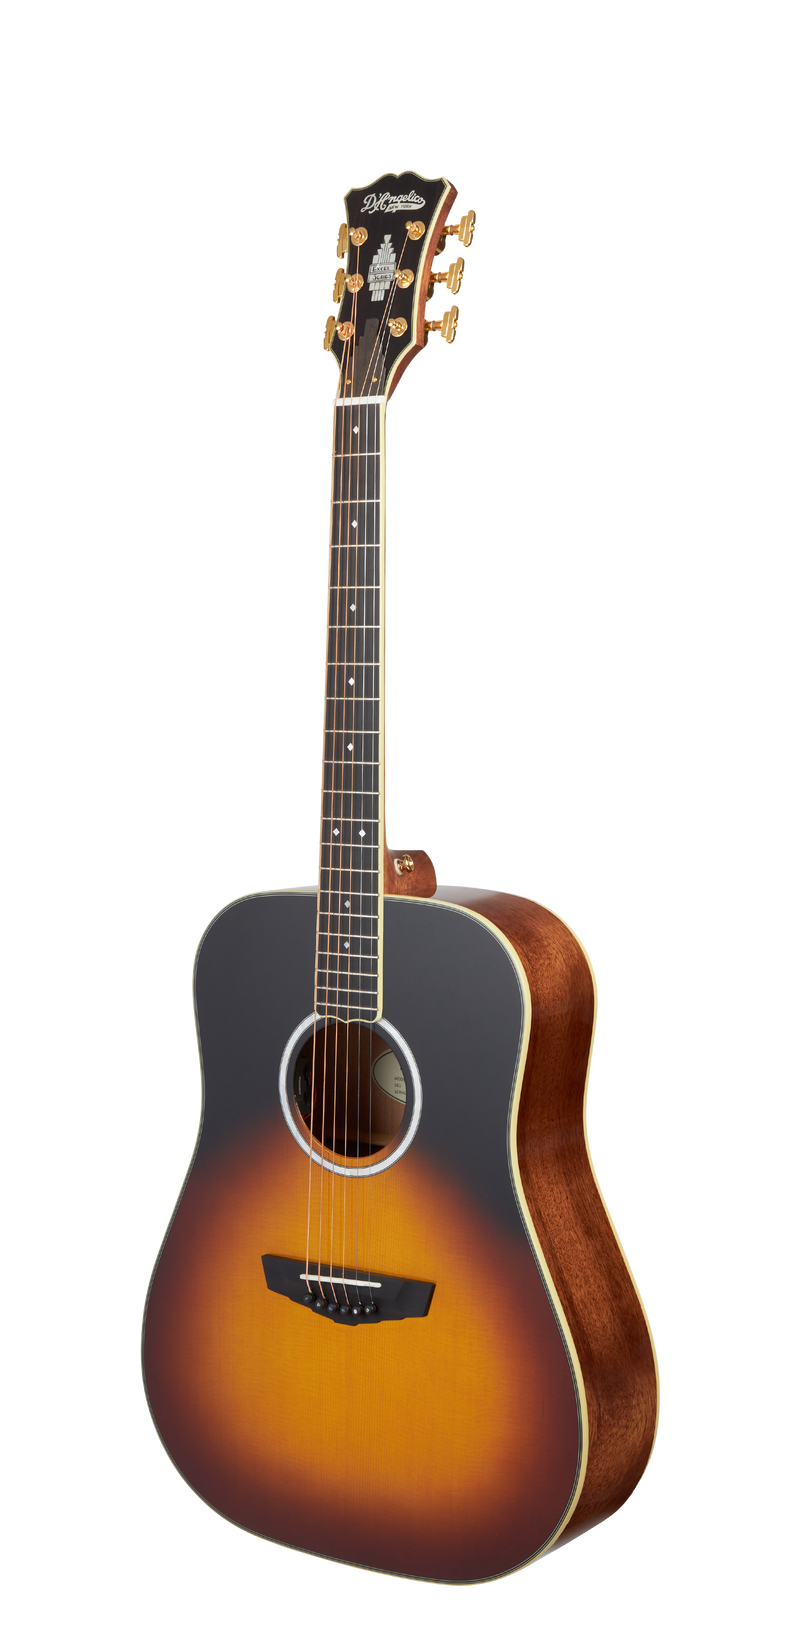 D'Angelico EXCEL LEXINGTON Series Acoustic Electric Guitar (Autumn Sunset)